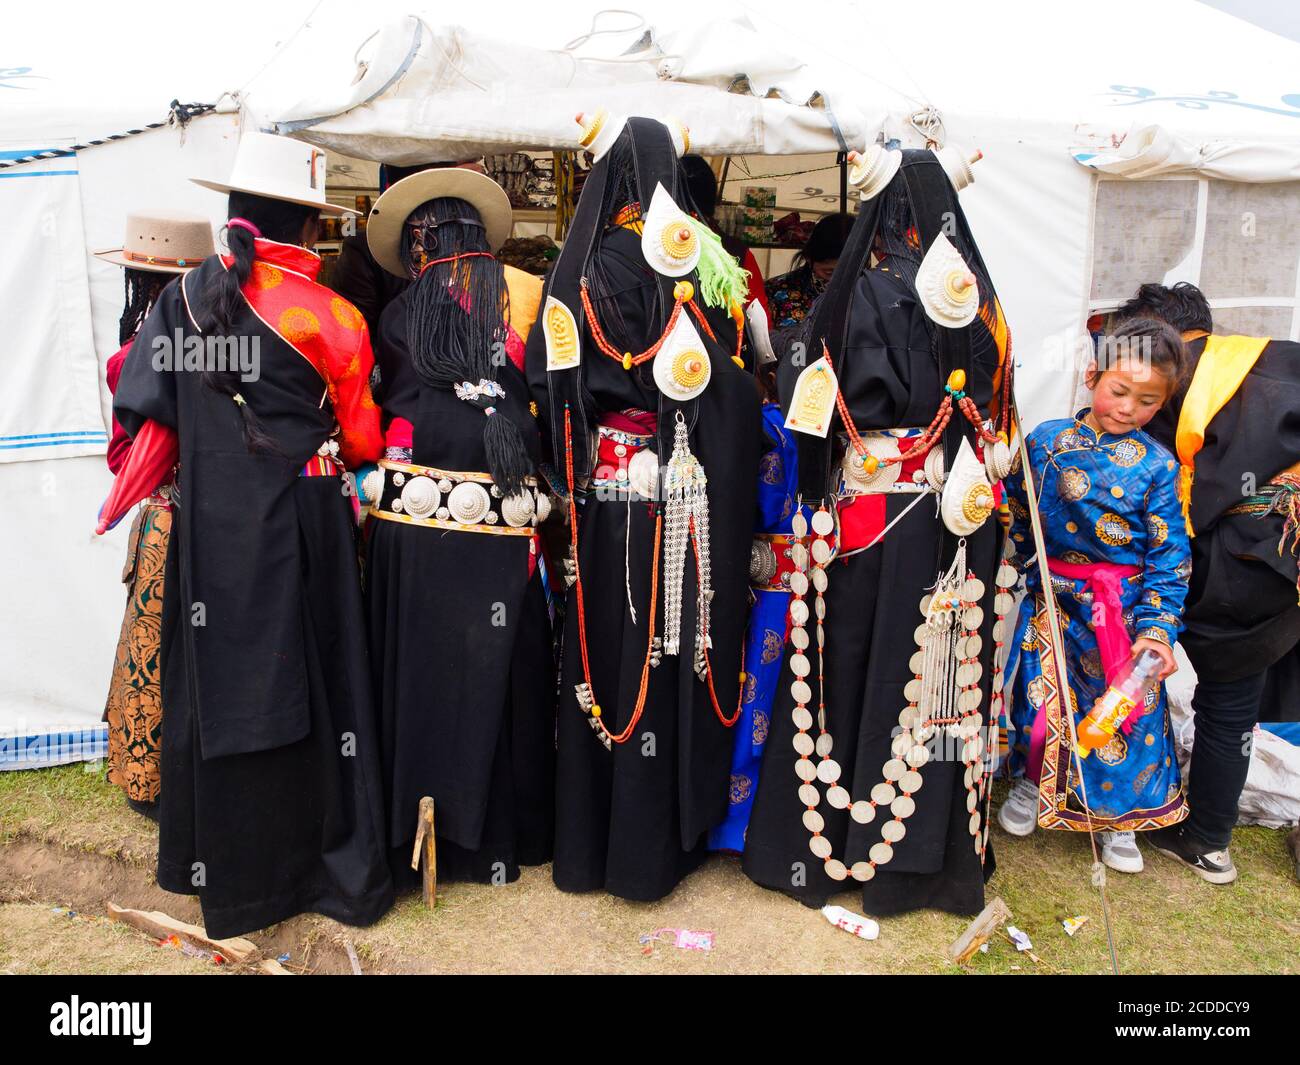 Kham-Leute verkleideten sich, um an dem Pferdefest in einem Grasland in der Nähe der Stadt Litang teilzunehmen. Stockfoto